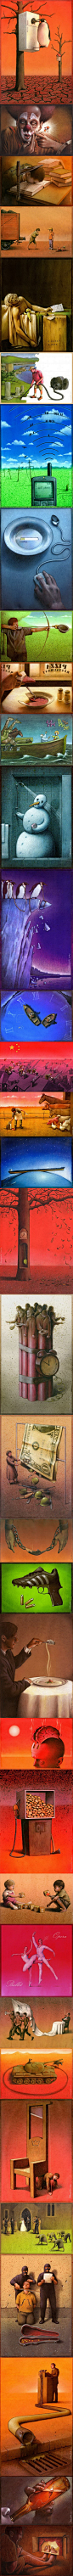 意味深长的现实主义插画
乍一看是滑稽，细一想是暗讽。波兰插画家Pawel Kuczynski出生于1976年2004年至今获得92项艺术奖项与荣誉。他的画风属于现代波兰超现实主义绘画，细腻而富有想象力，主题纵横于社会、环保等各个领域的现实问题。